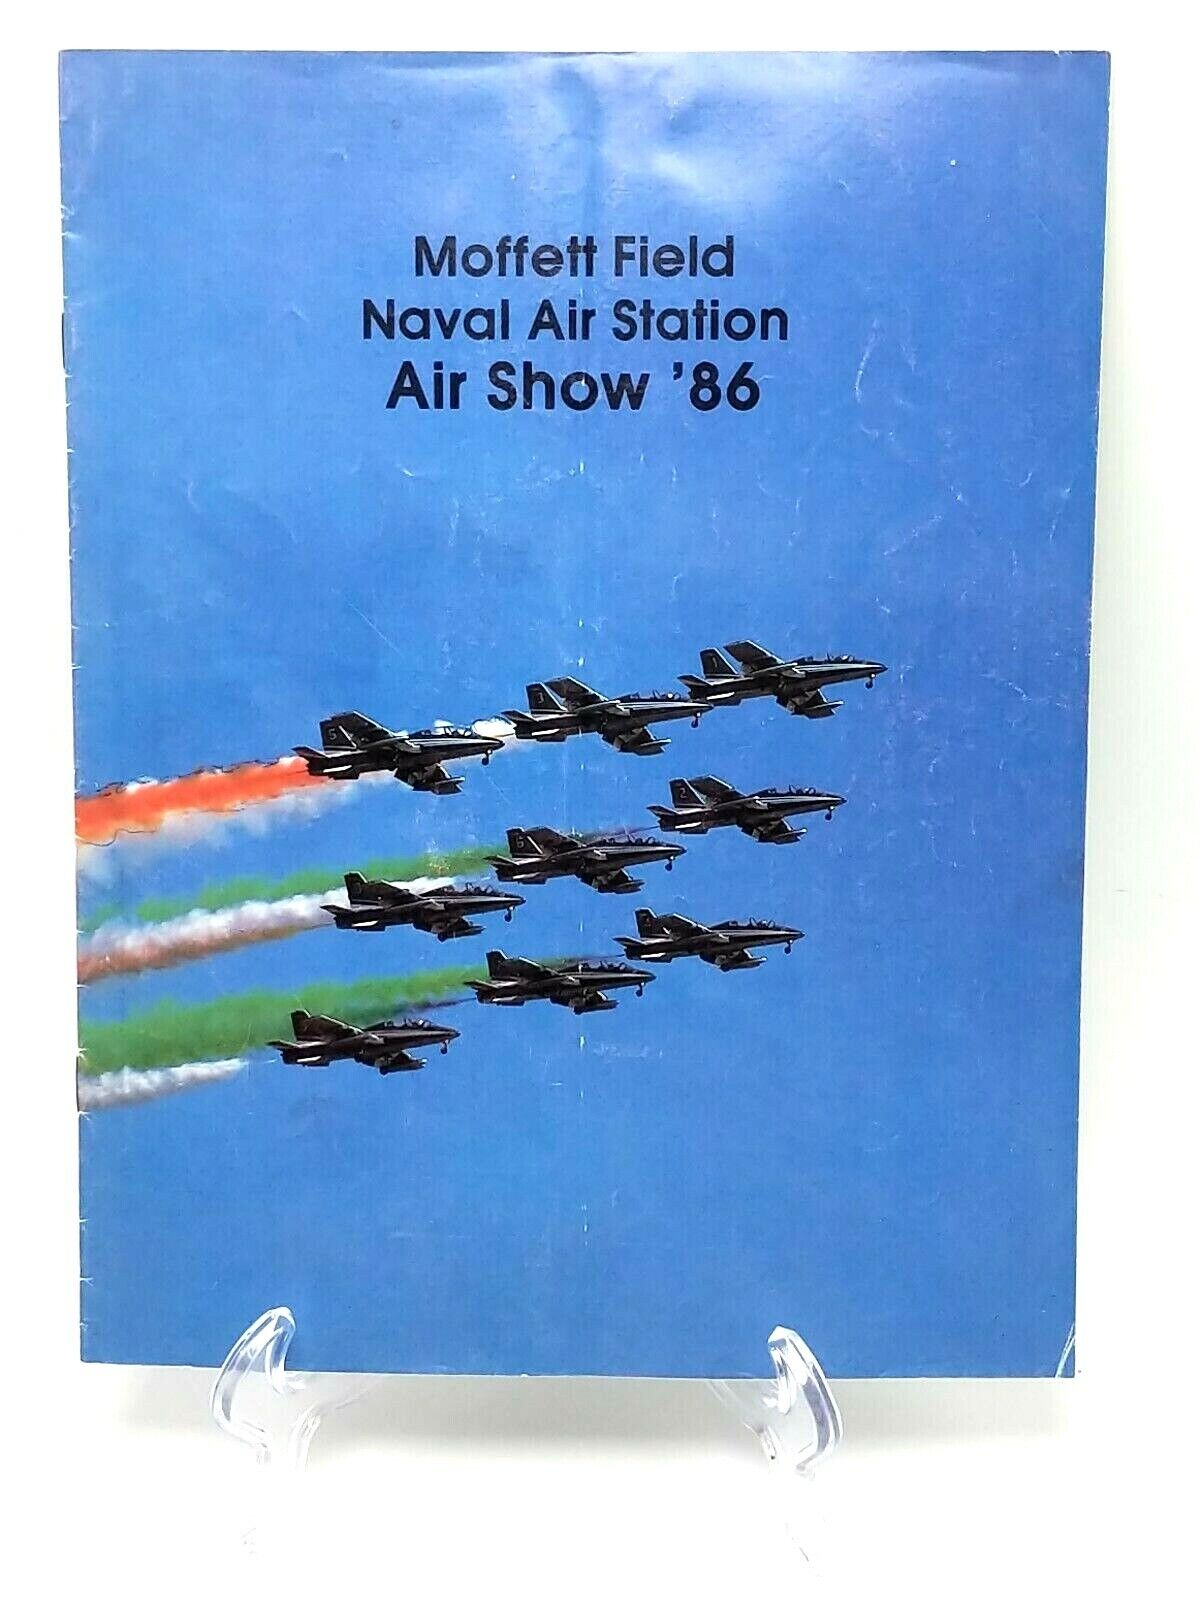 NAS MOFFETT FIELD CA 1986 AIR SHOW FRECCE TRICOLORI PROGRAM AERMACCHI MB-339 JET